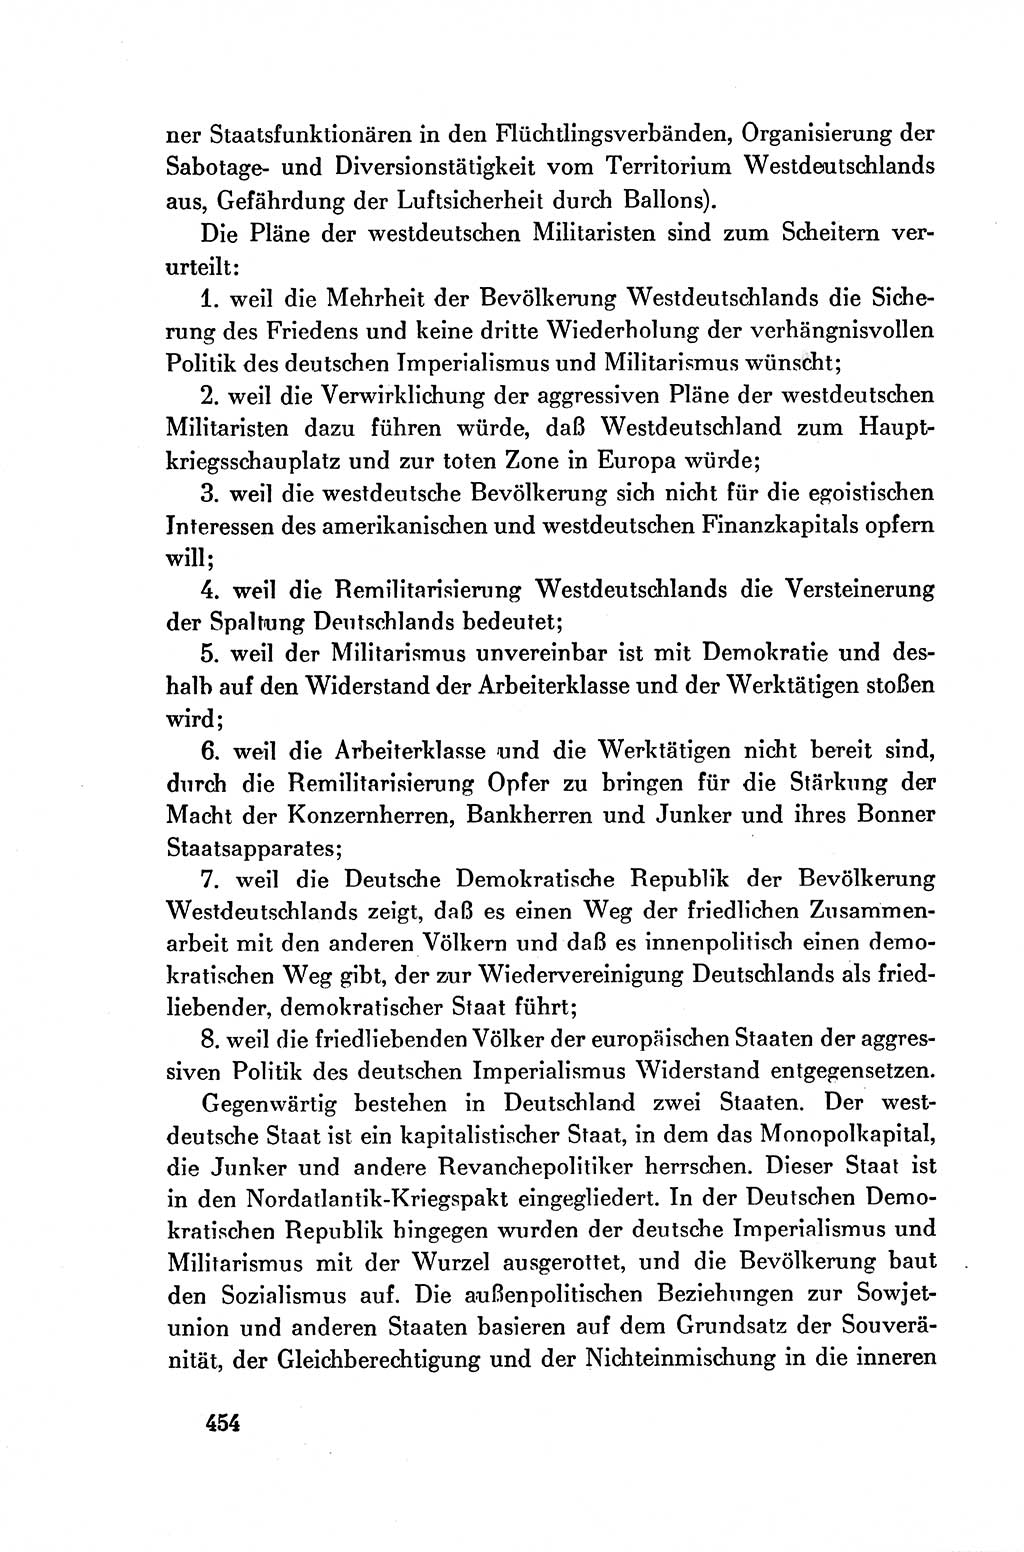 Dokumente der Sozialistischen Einheitspartei Deutschlands (SED) [Deutsche Demokratische Republik (DDR)] 1954-1955, Seite 454 (Dok. SED DDR 1954-1955, S. 454)